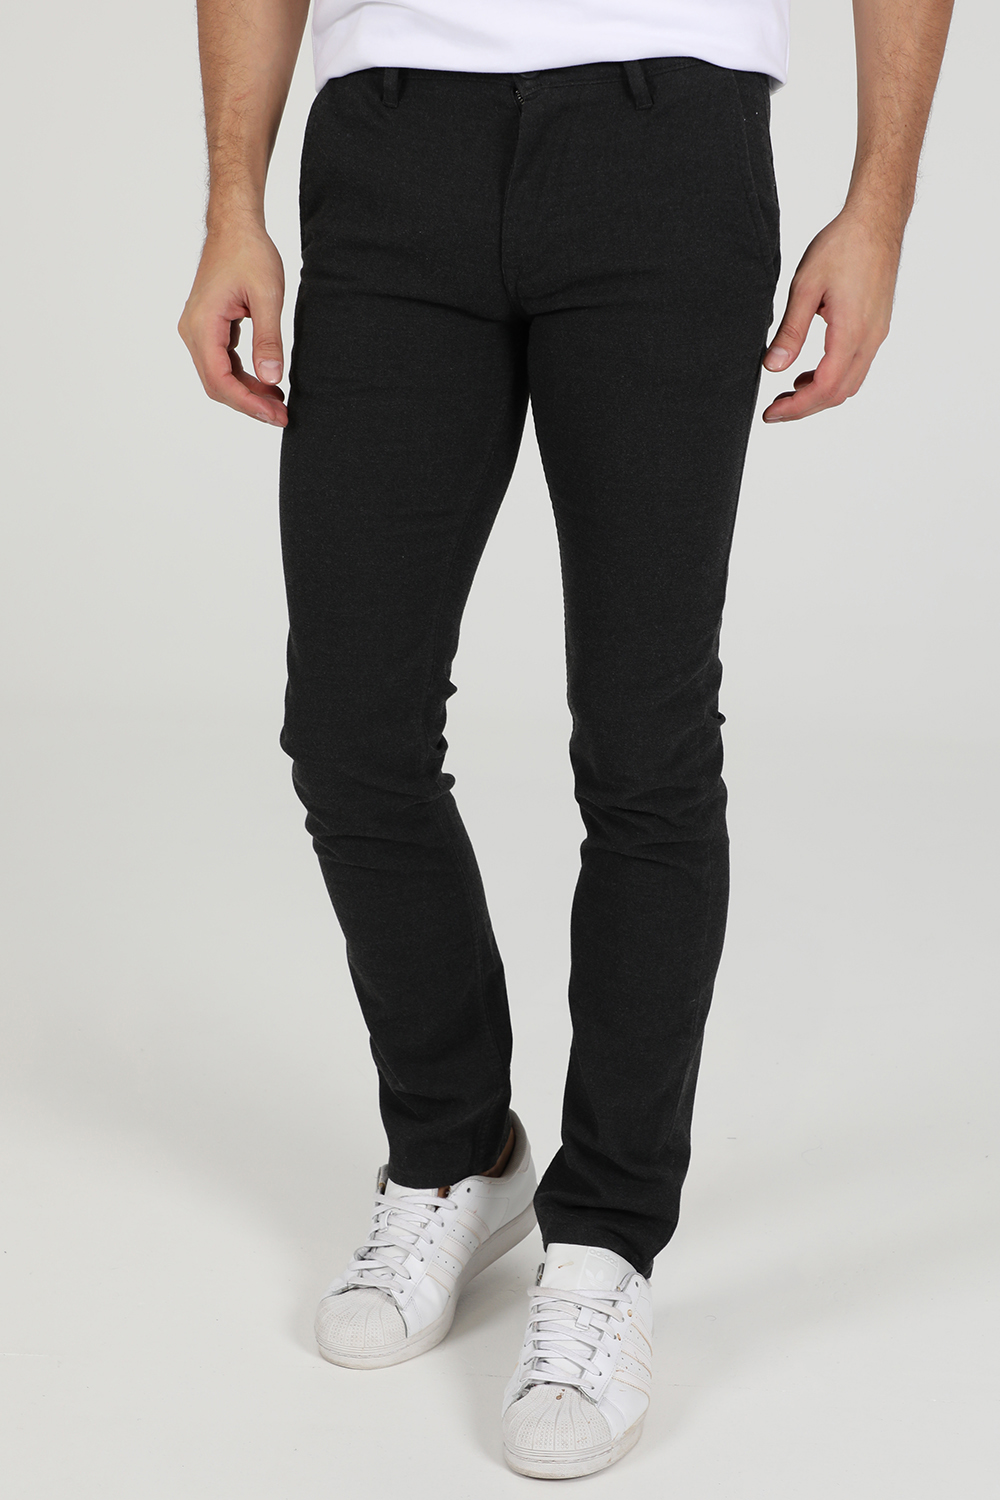 Ανδρικά/Ρούχα/Παντελόνια/Casual BOSS - Ανδρικό παντελόνι Boss Schino-Slim μαύρο